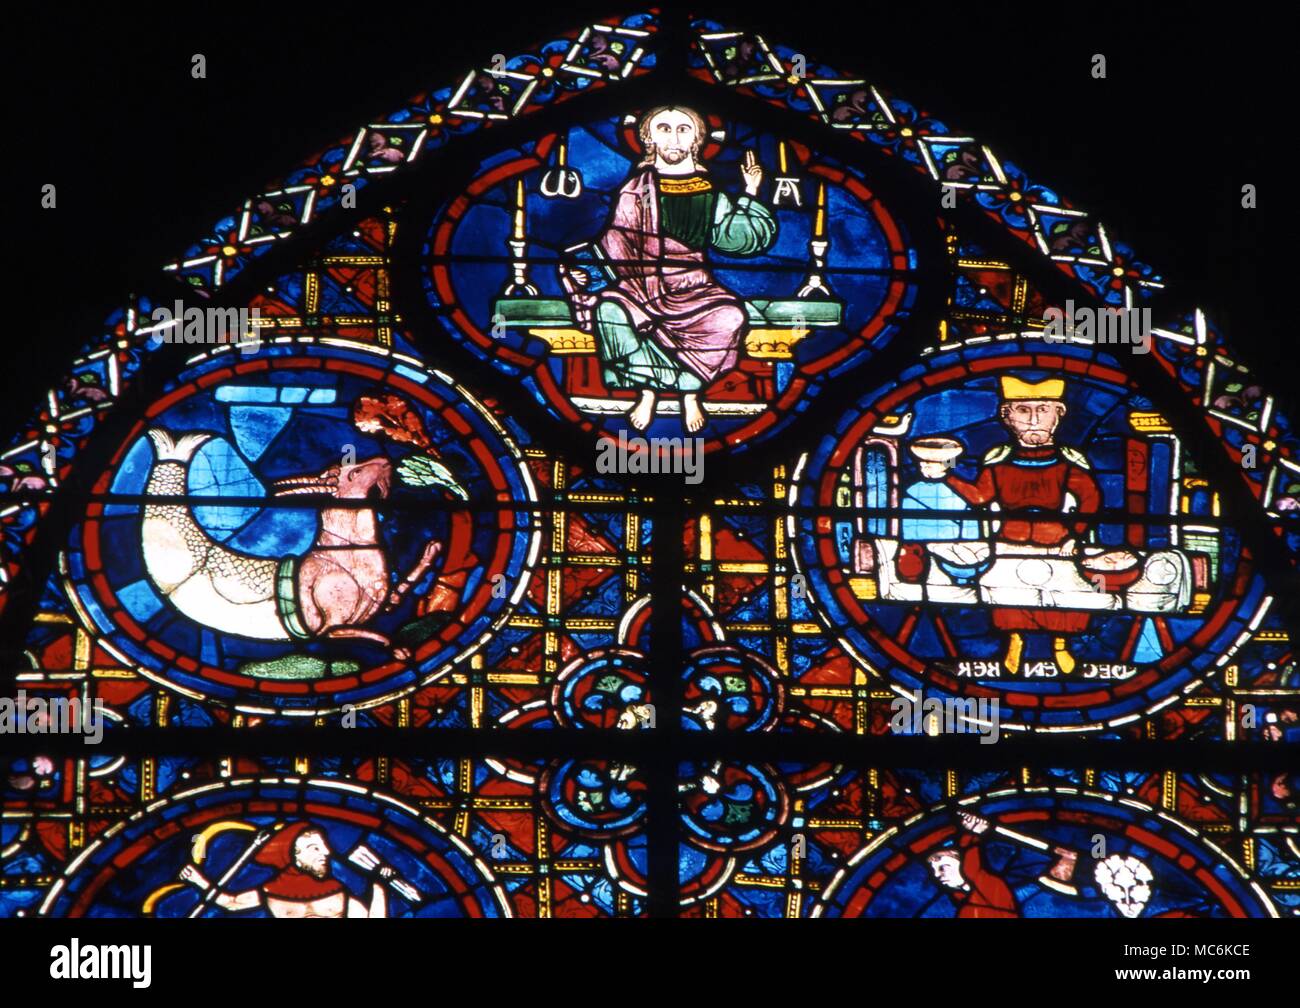 Astrologie Tierkreiszeichen Steinbock Detail des Tierkreises Fenster in der Kathedrale von Chartres Frankreich Steinbock, die Ziege fisch Christus zwischen Alpha und Omega Monat Dezember Stockfoto